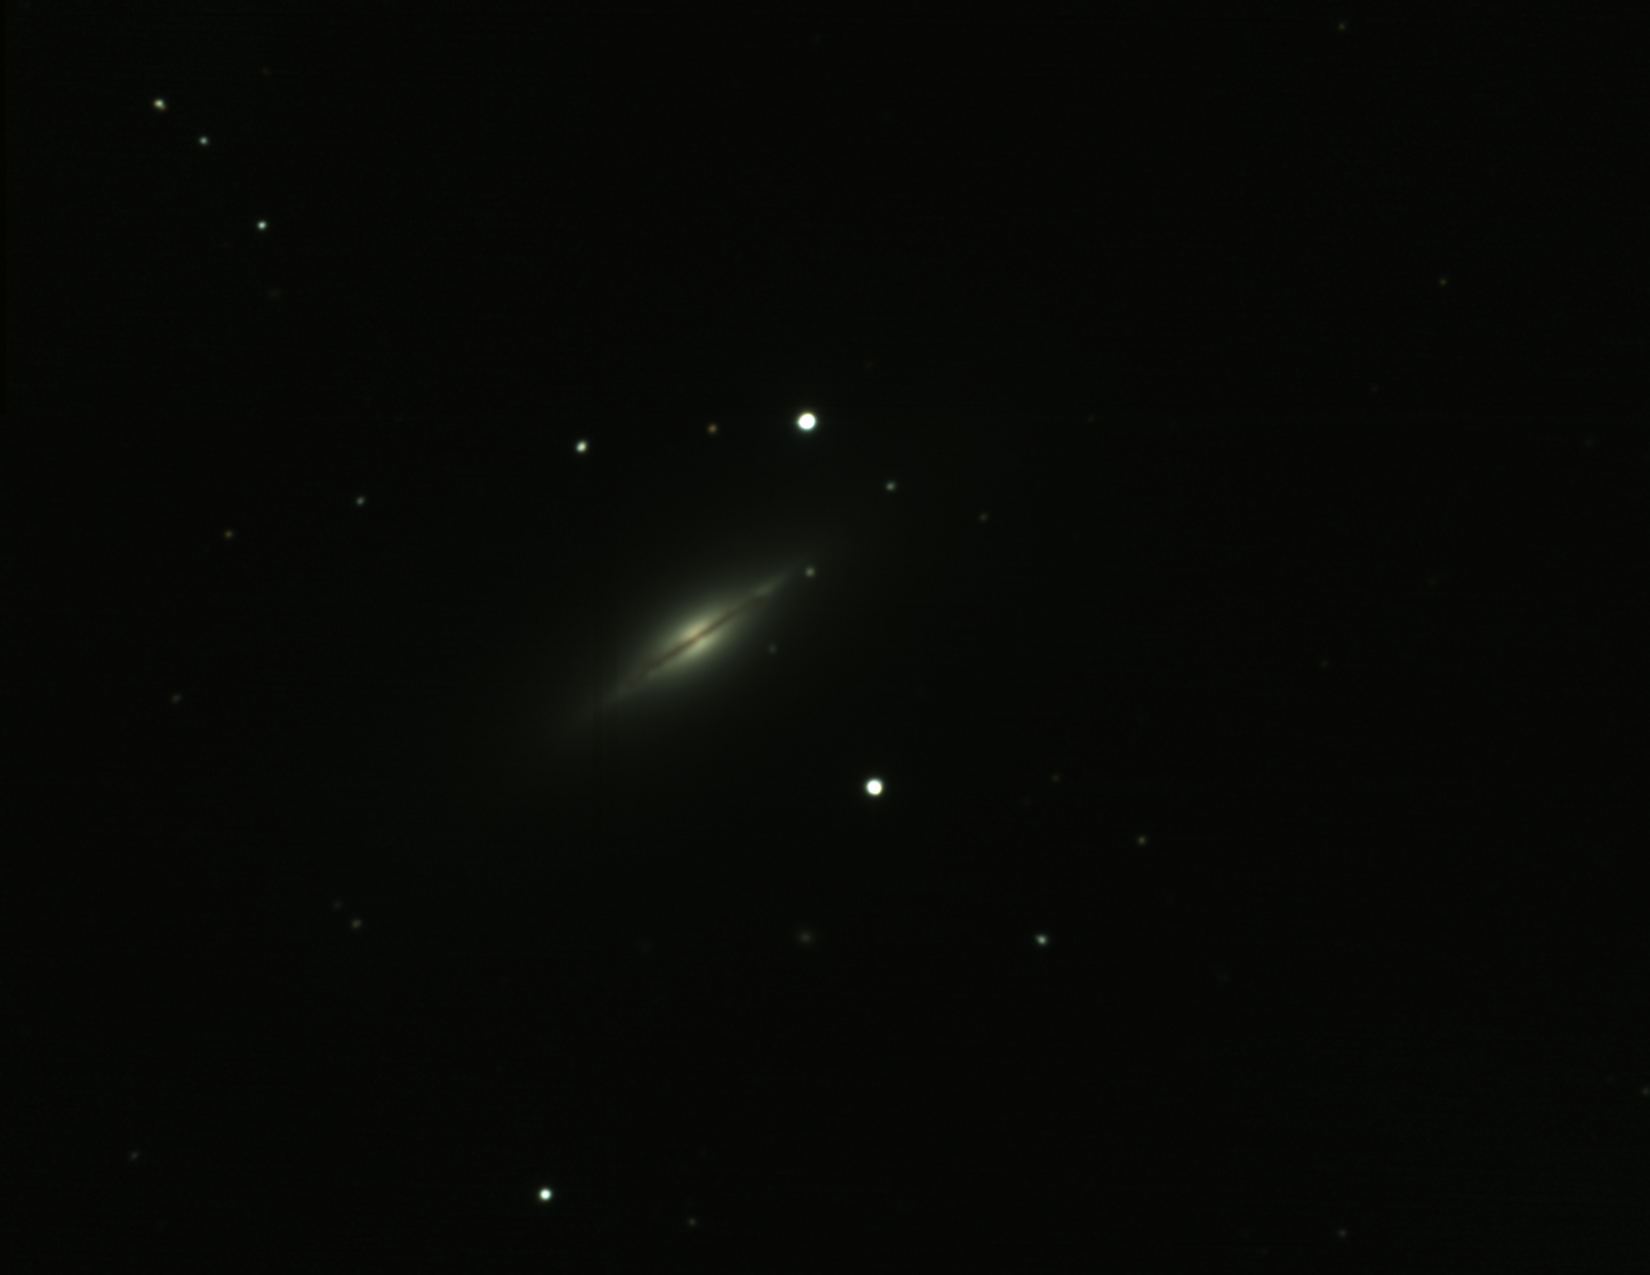 NGC 5866